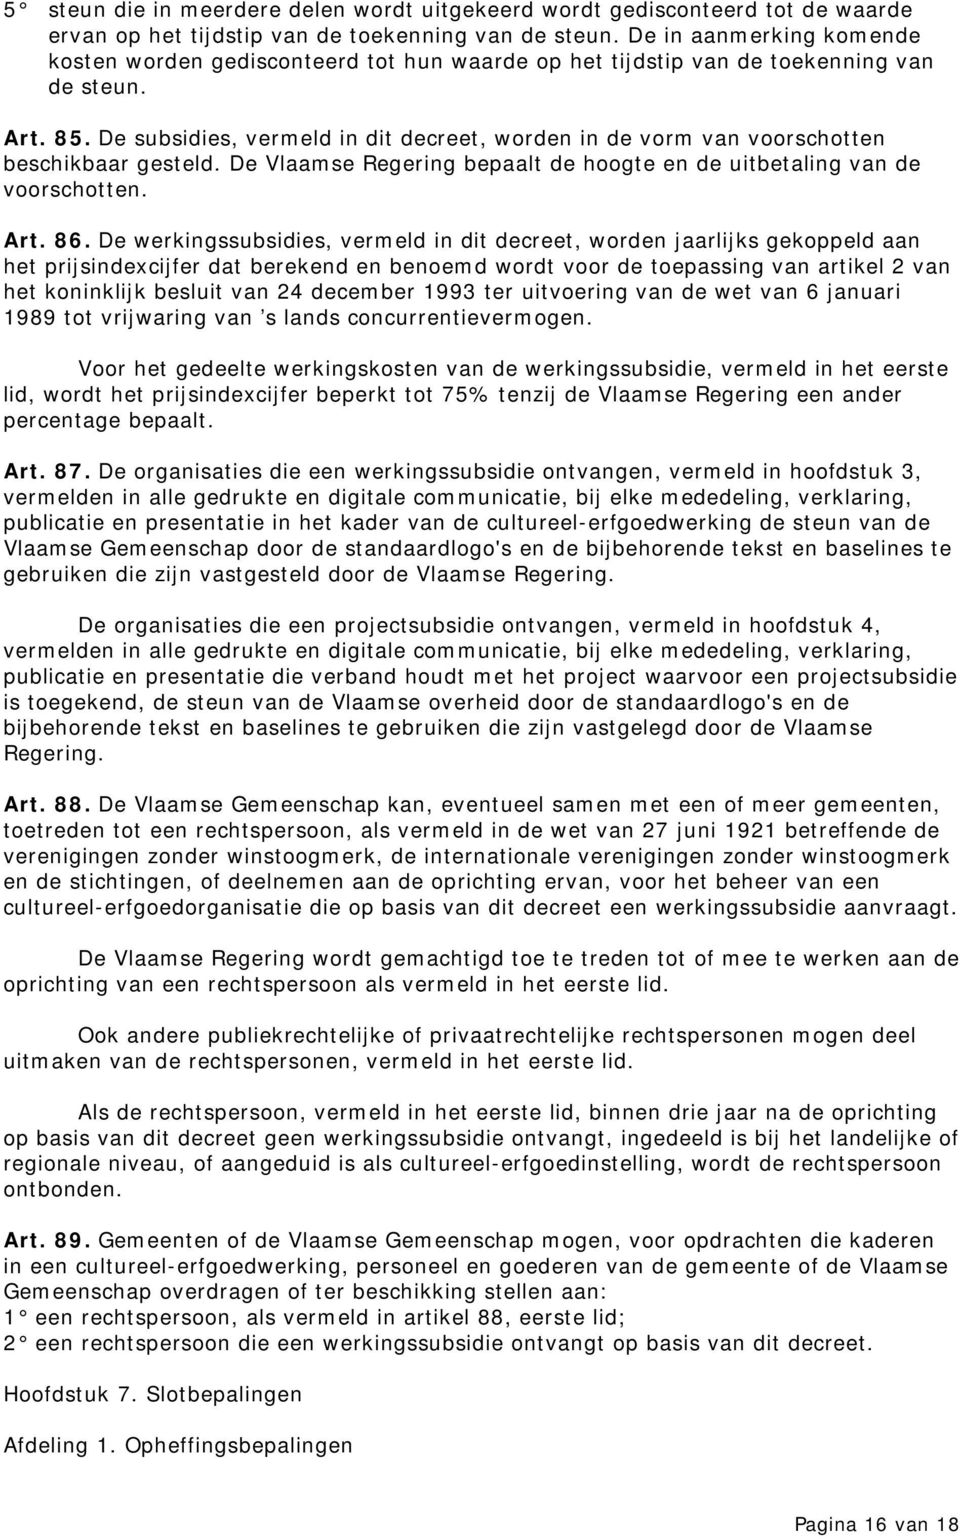 De subsidies, vermeld in dit decreet, worden in de vorm van voorschotten beschikbaar gesteld. De Vlaamse Regering bepaalt de hoogte en de uitbetaling van de voorschotten. Art. 86.